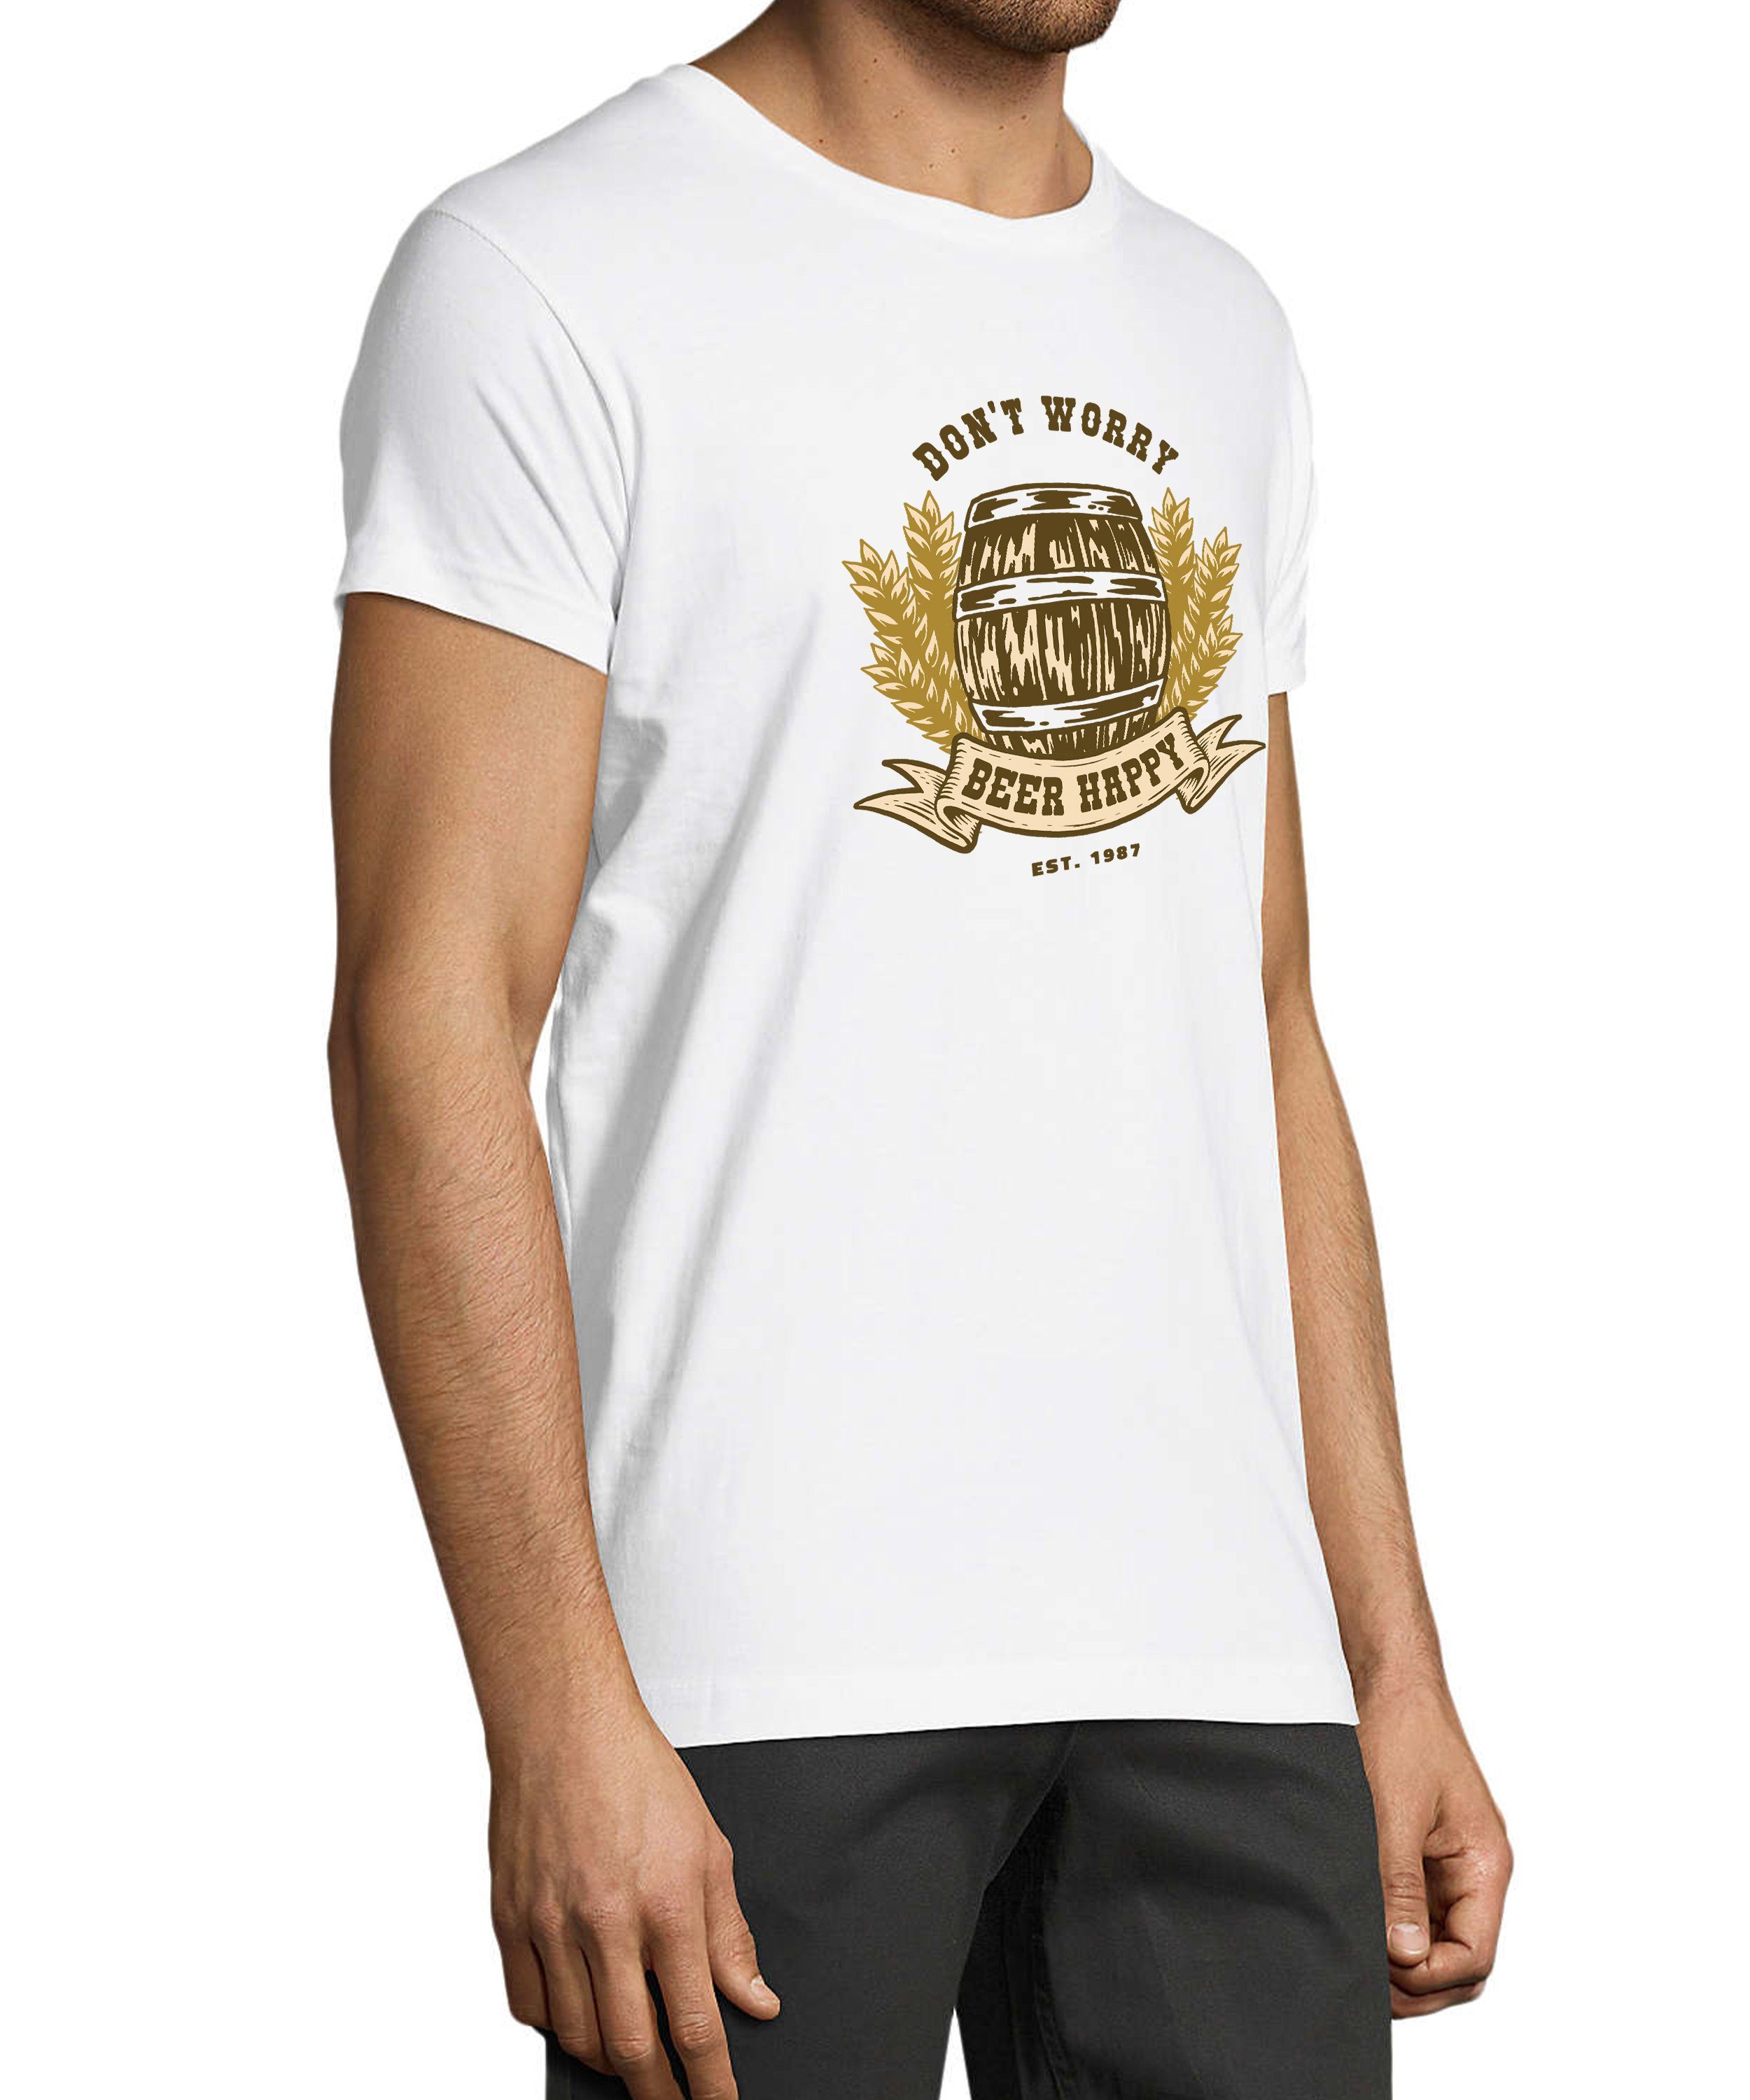 MyDesign24 T-Shirt Herren Regular - Shirt mit Spruch Baumwollshirt mit Fit, Oktoberfest weiss Bierfass print i301 Aufdruck